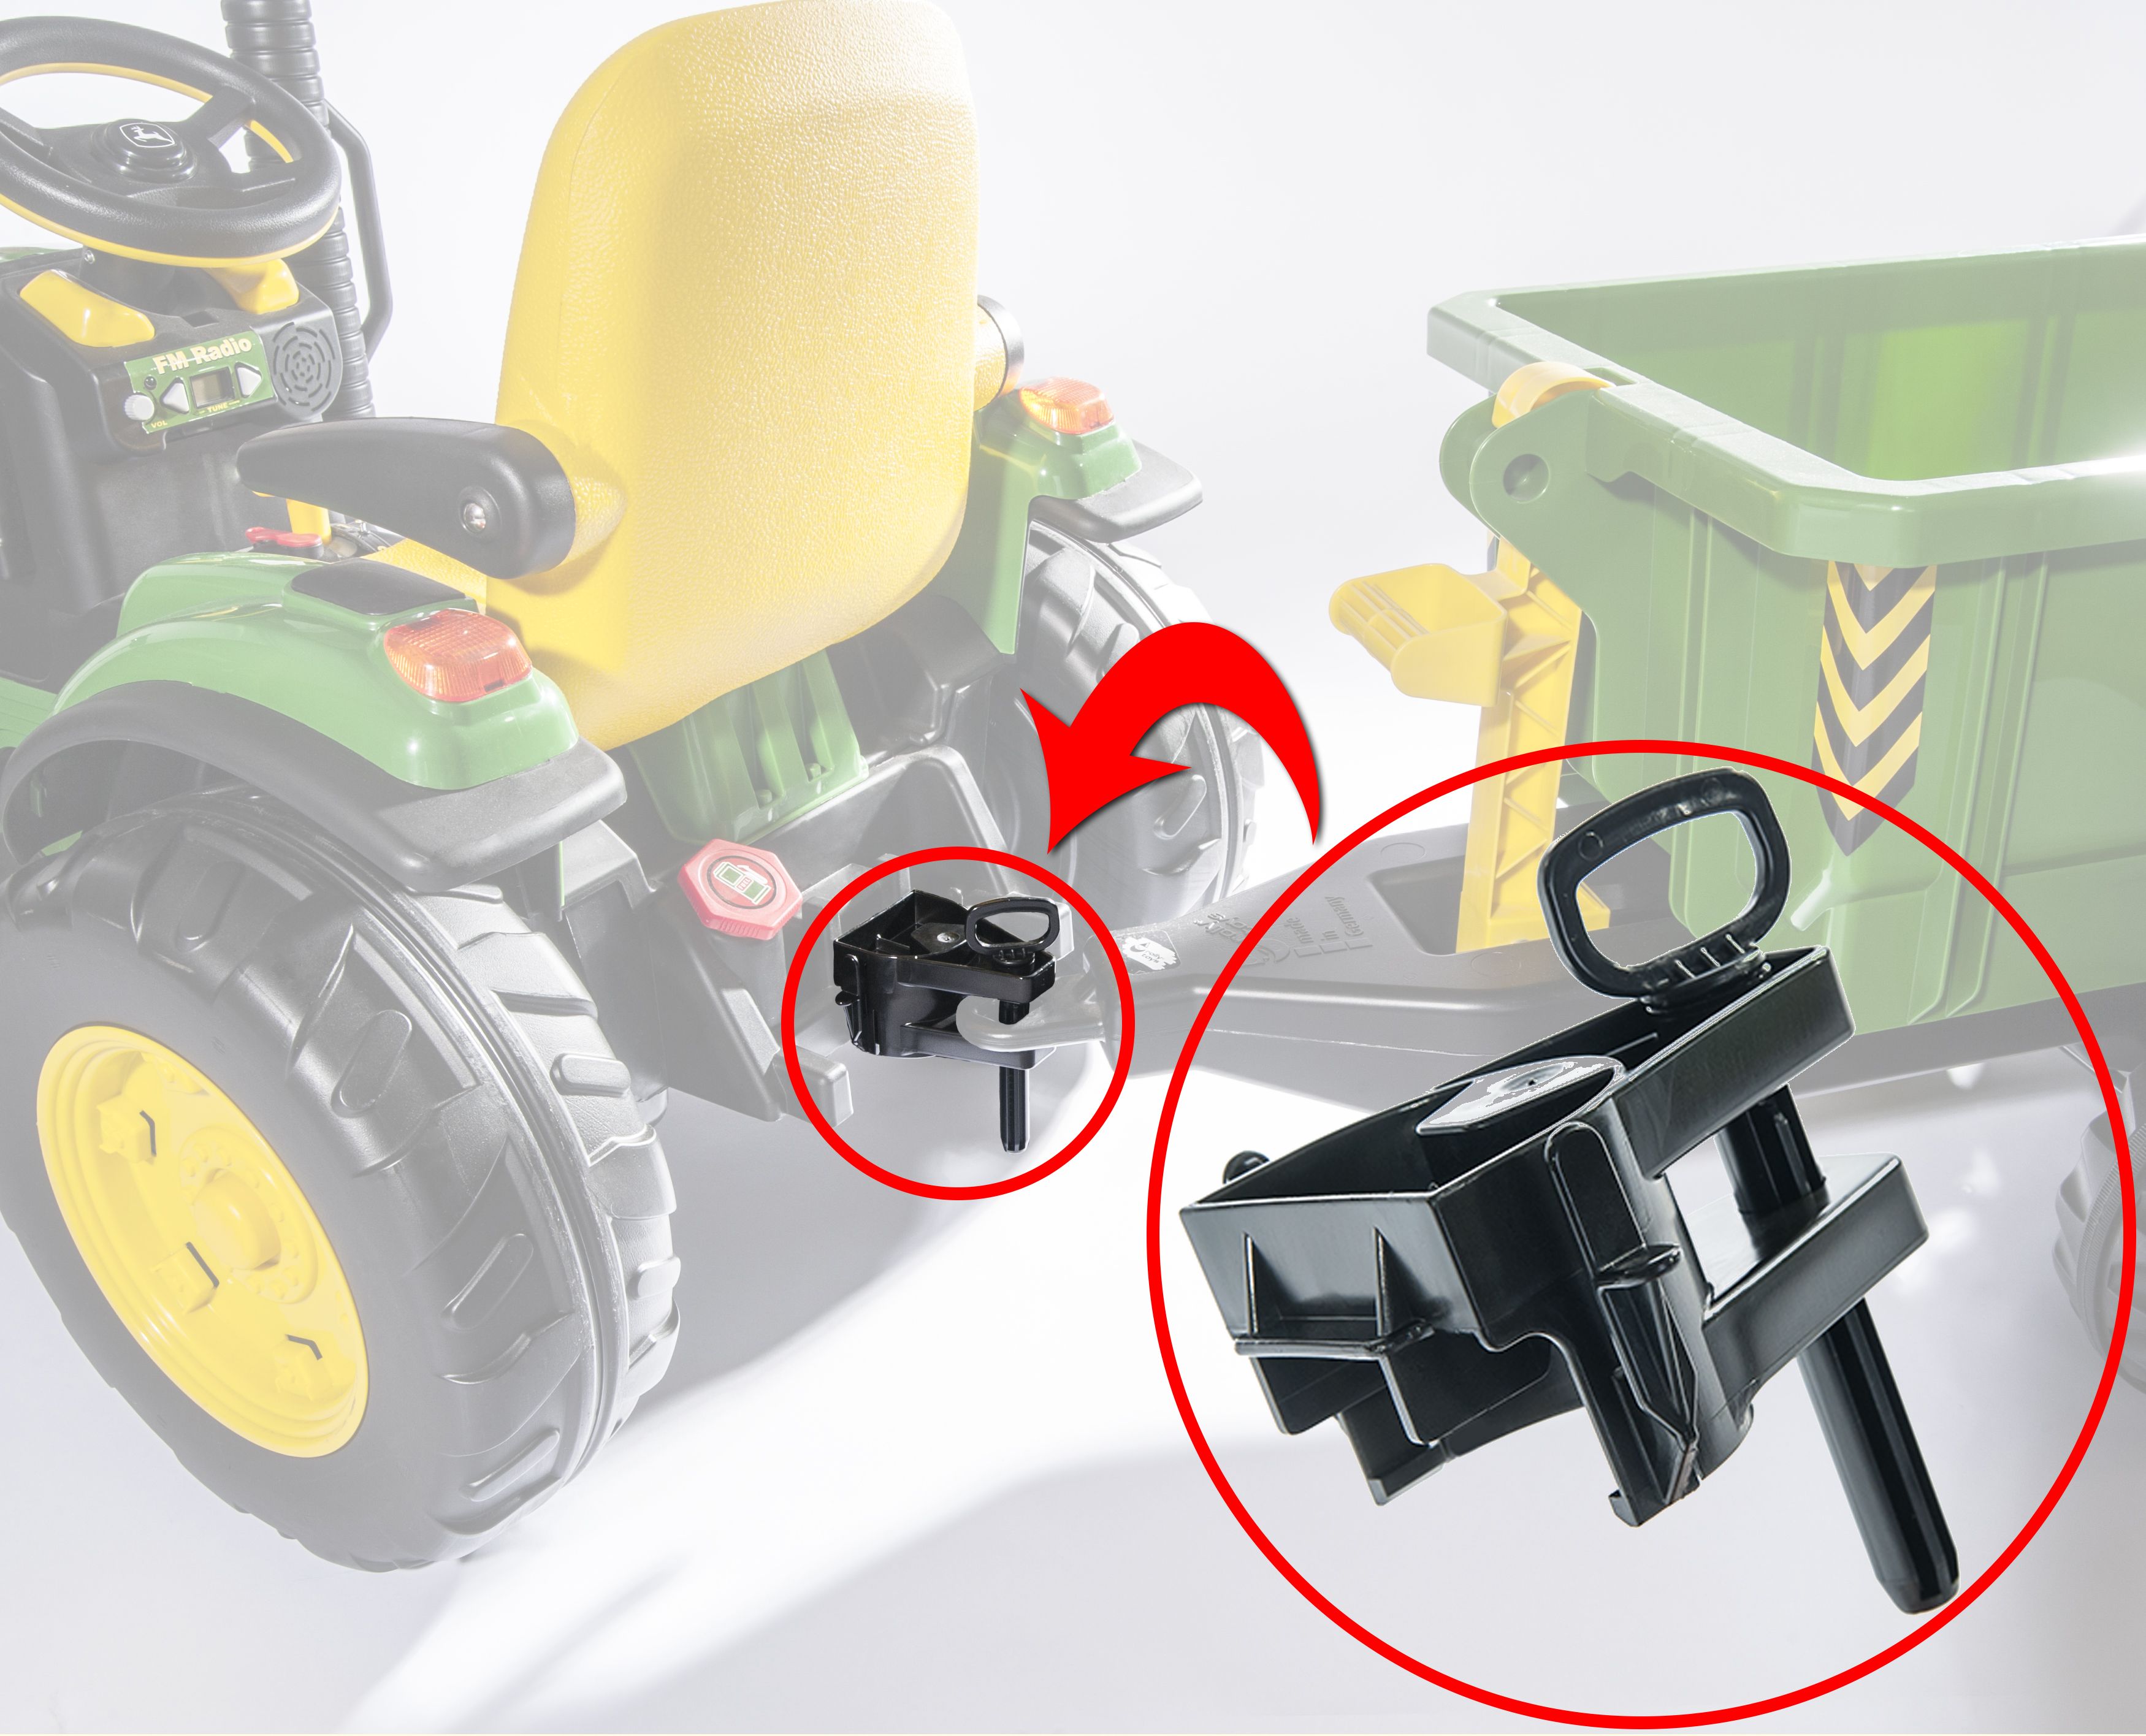 rolly toys Anhänger Adapter kompatibel mit Peg Perego Traktoren 